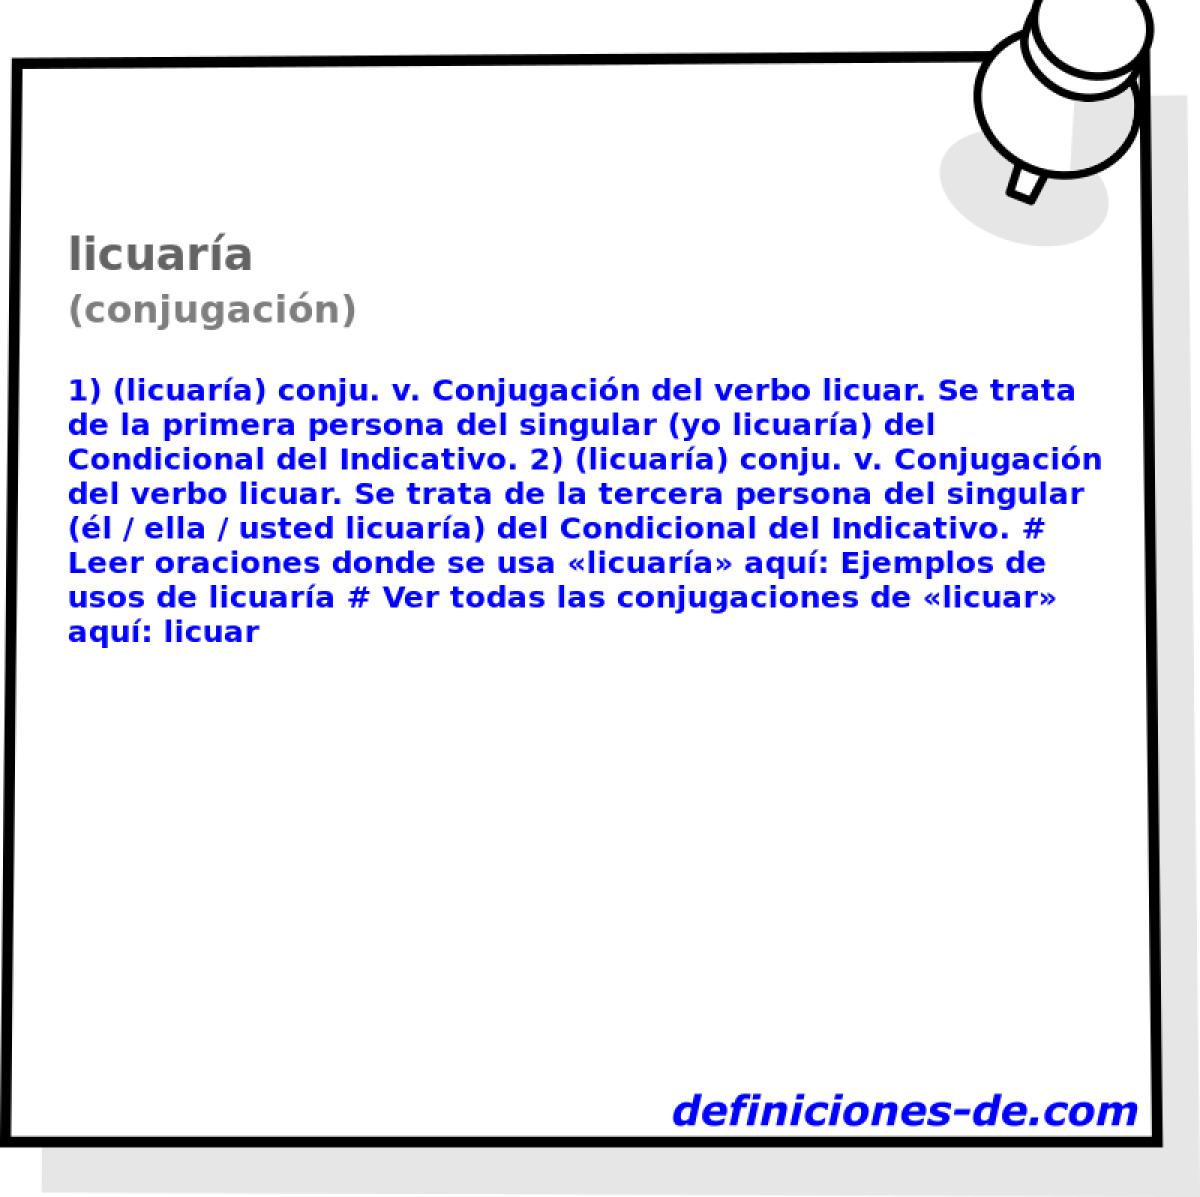 licuara (conjugacin)